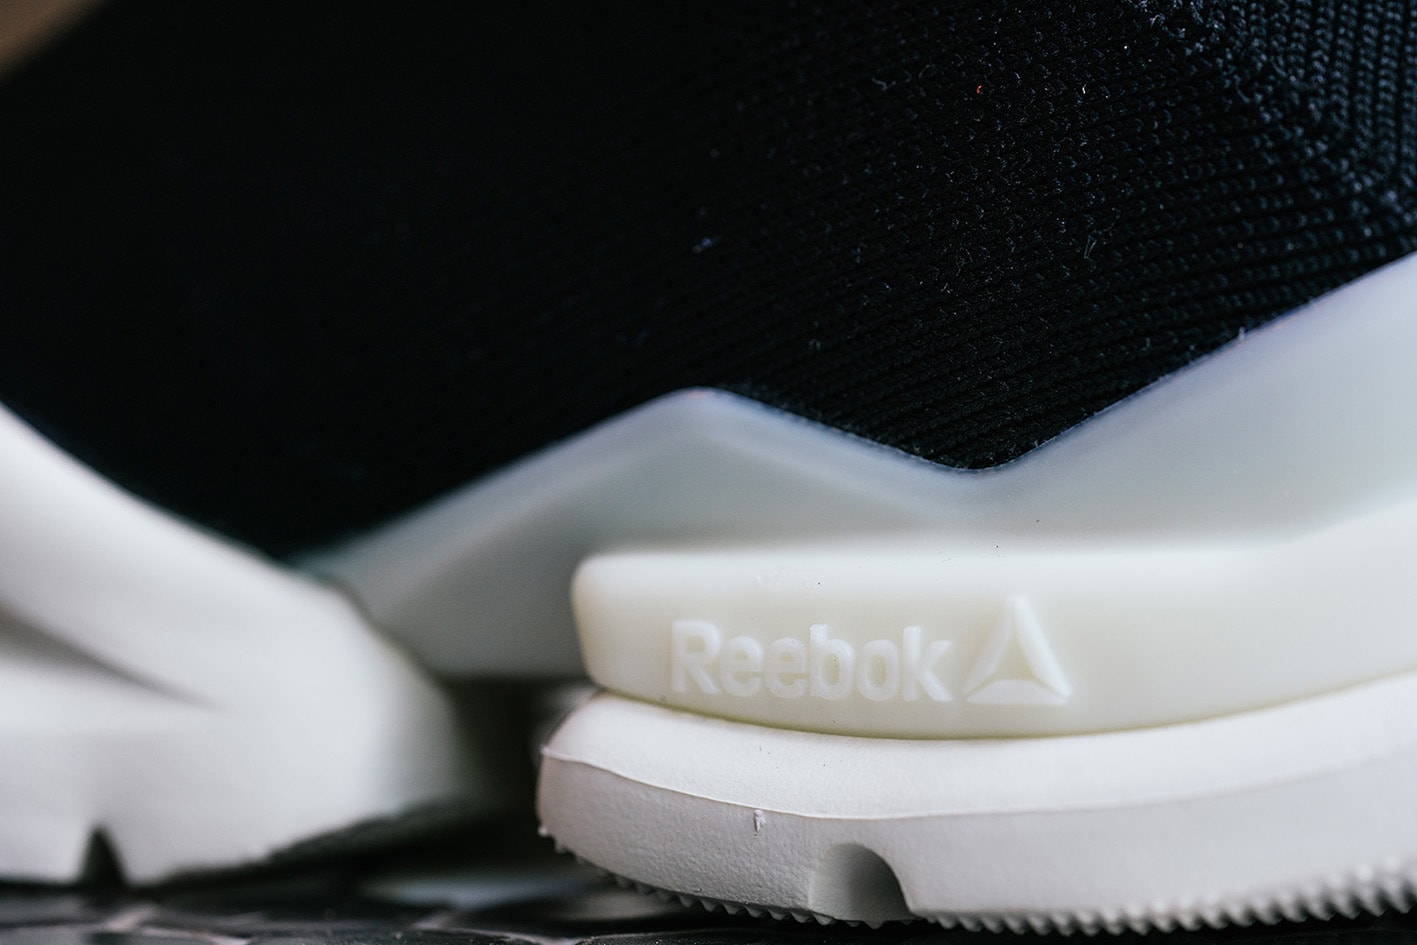 Reebok 推出全新鞋款 Sock Run R Print